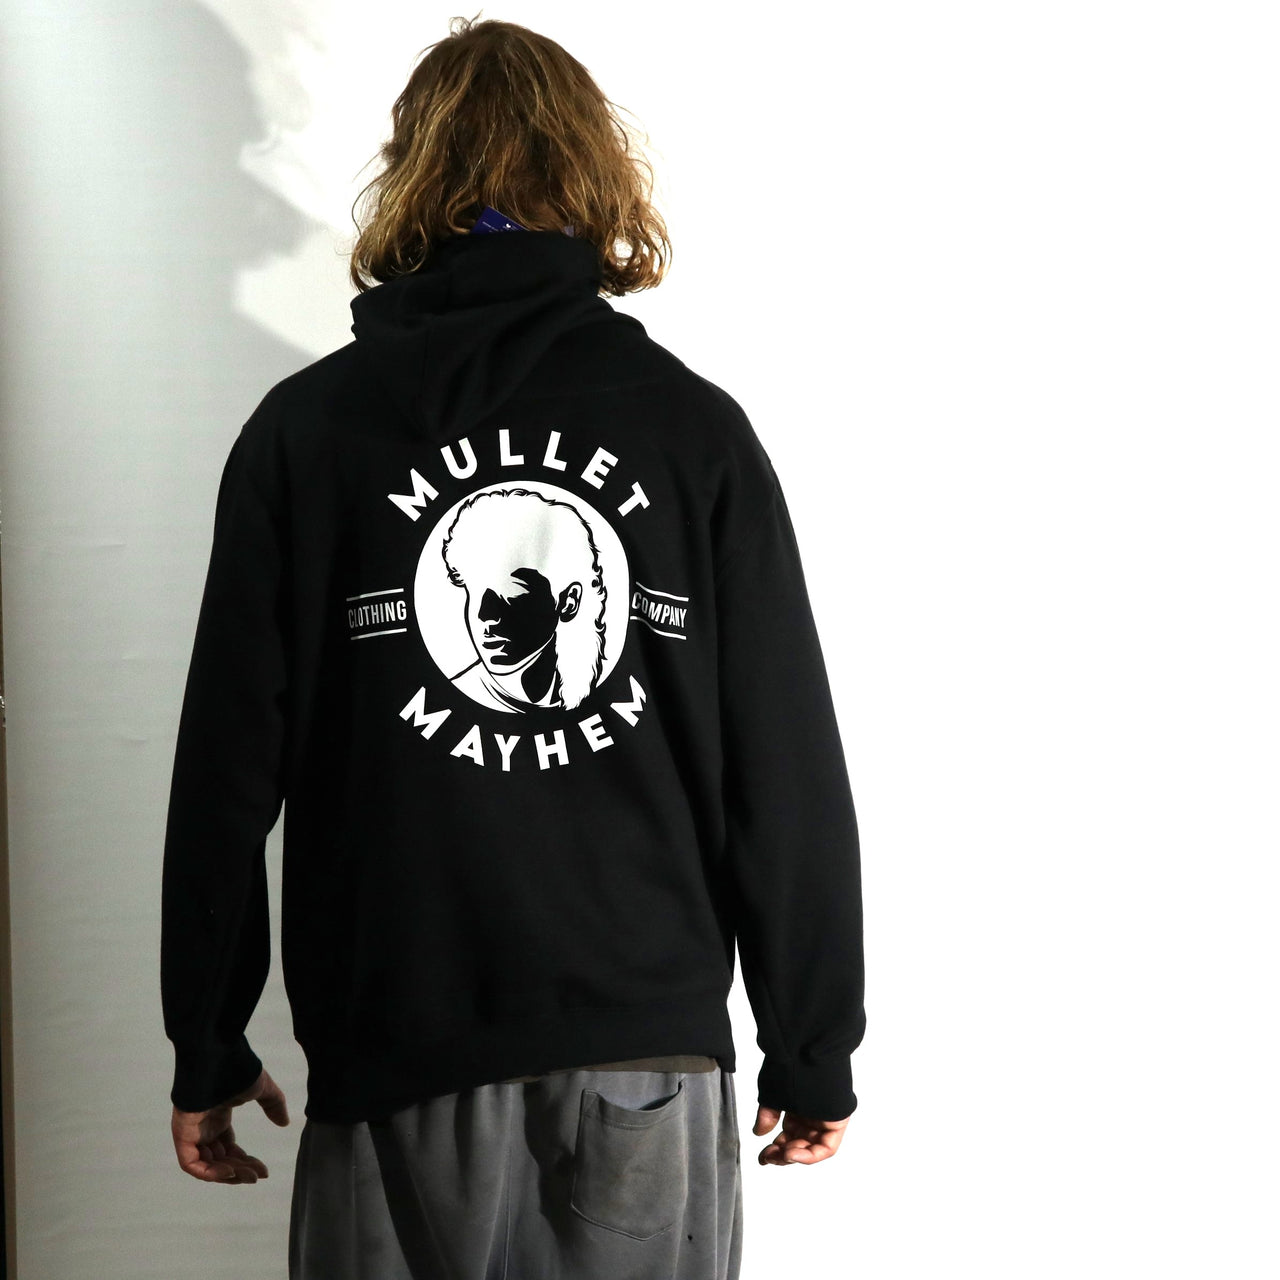 Mullet Mayhem Clothing Co. (Hoodie)